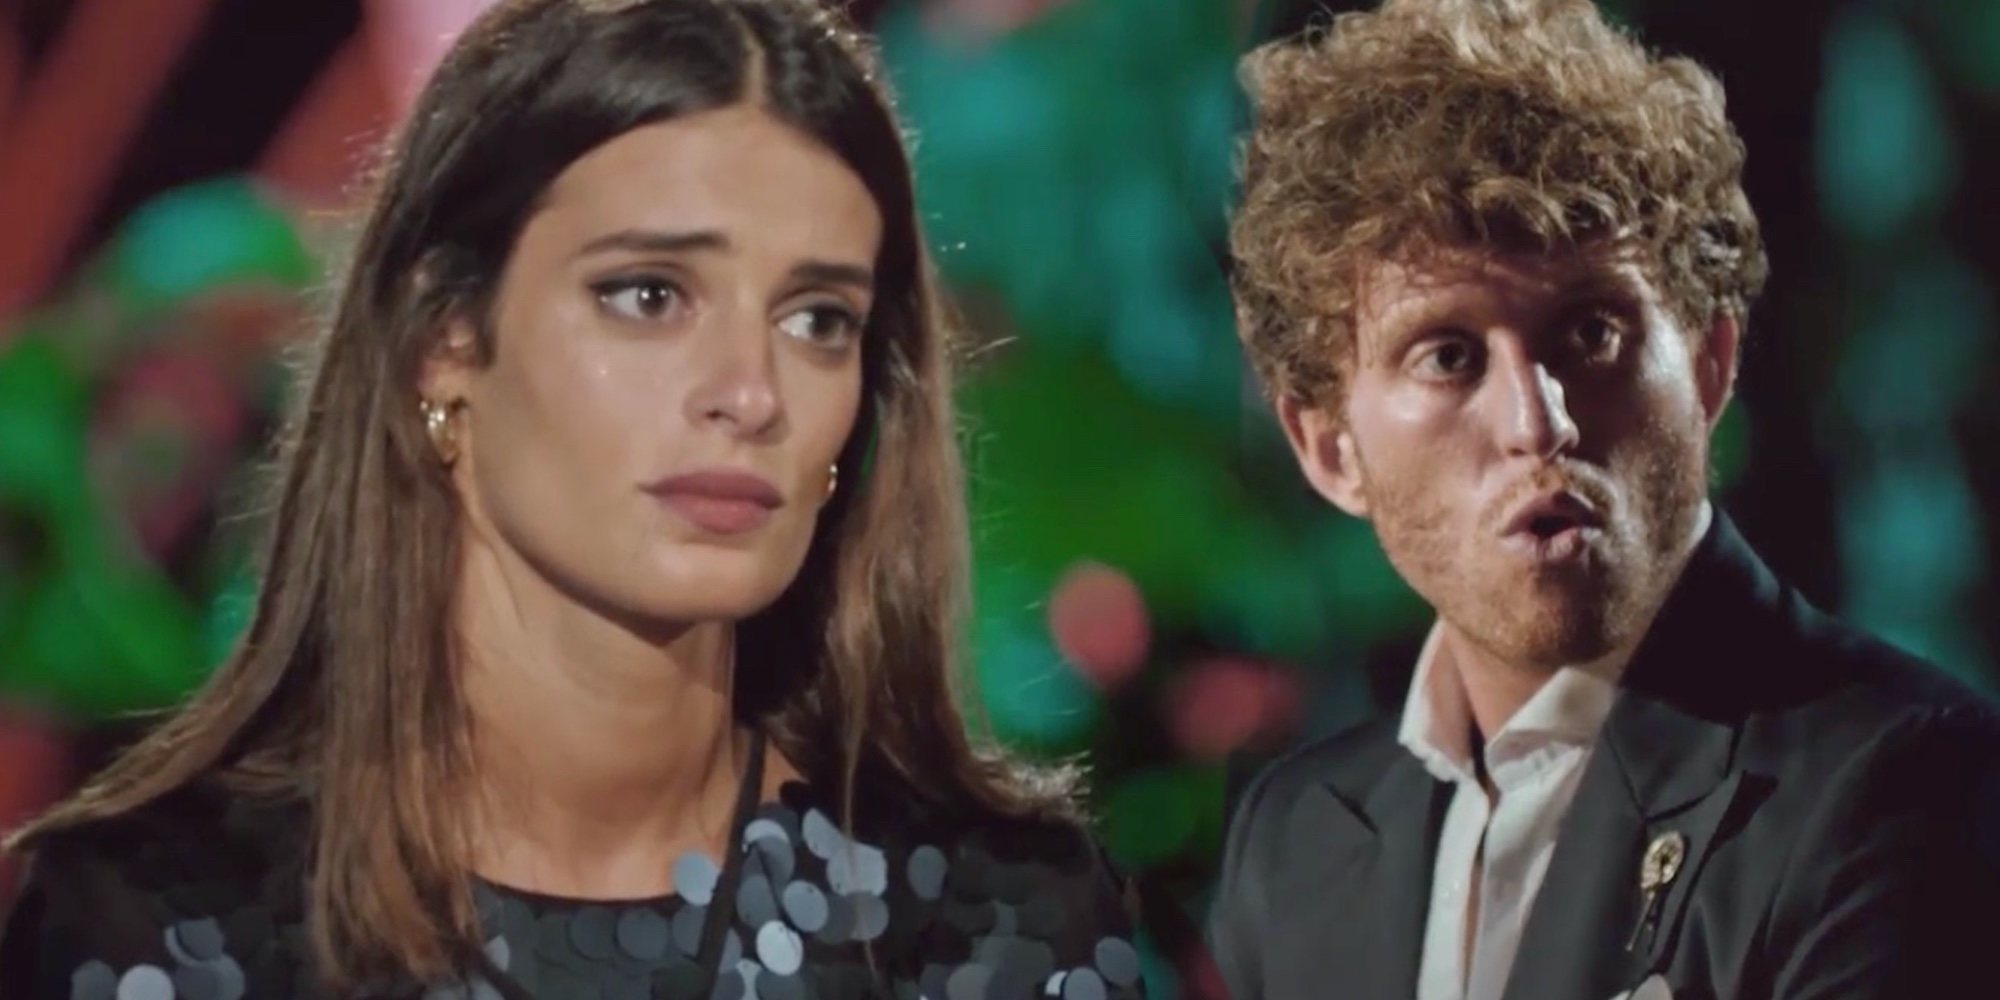 Susana rompe su relación con Gonzalo en 'La isla de las tentaciones': "No he recuperado la ilusión"